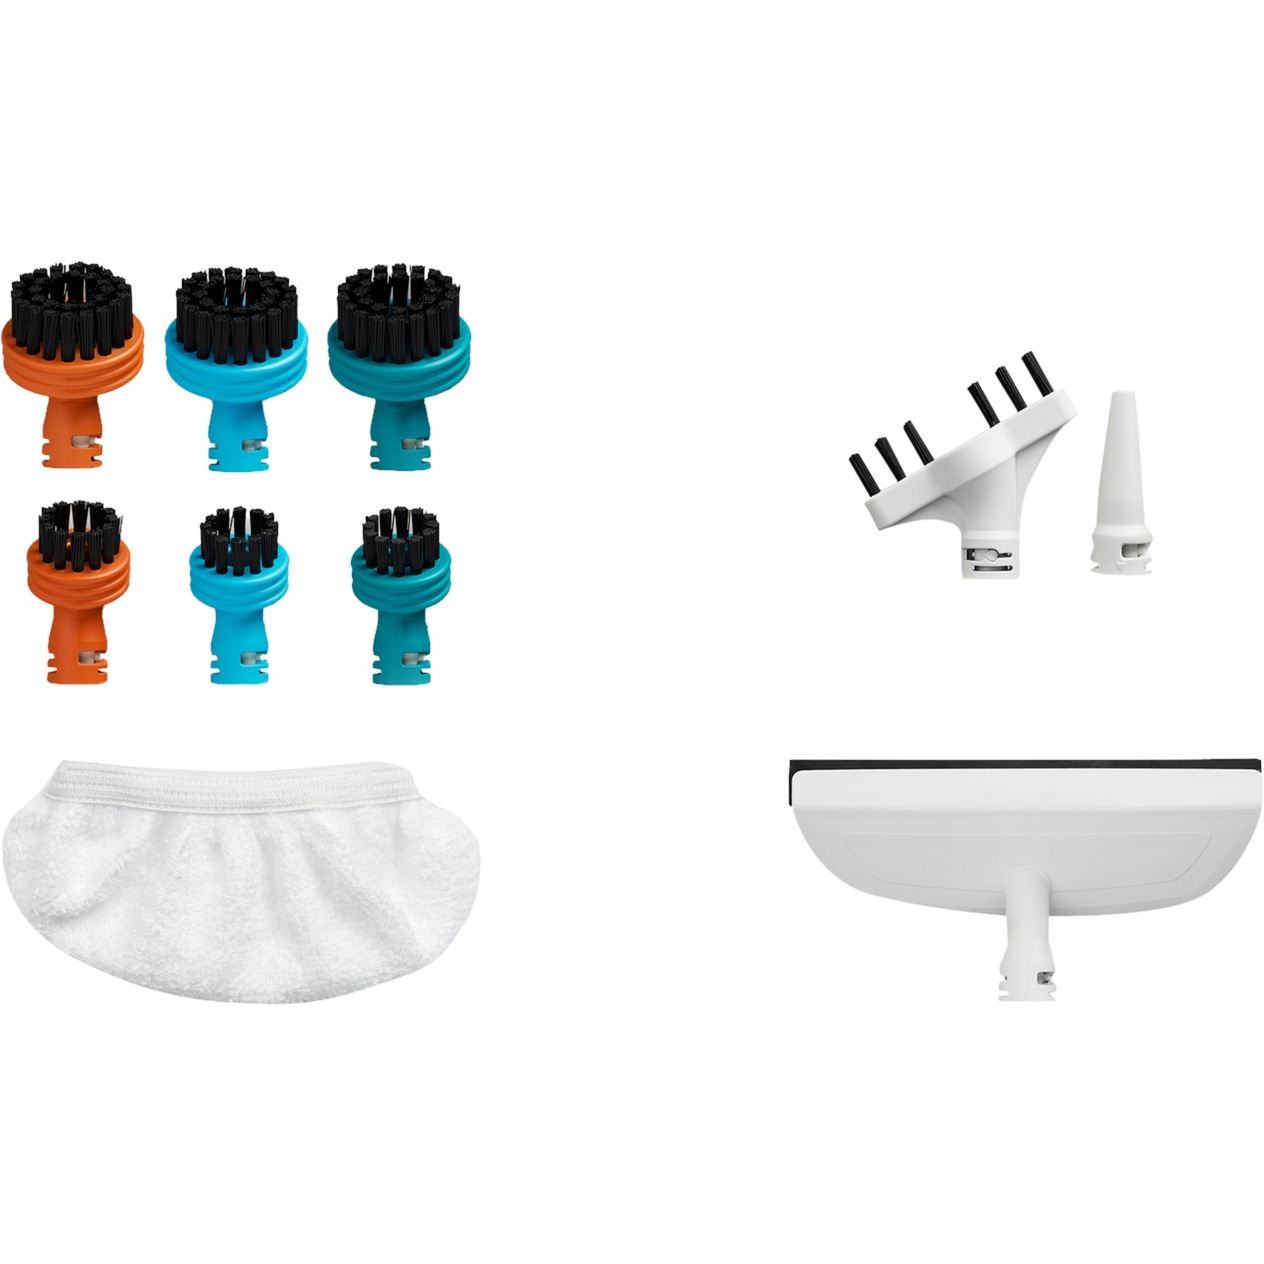 Image of Alternate - Reinigungs-Kit ZR850003, für Clean & Steam Multi, Staubsauger-Bürste online einkaufen bei Alternate